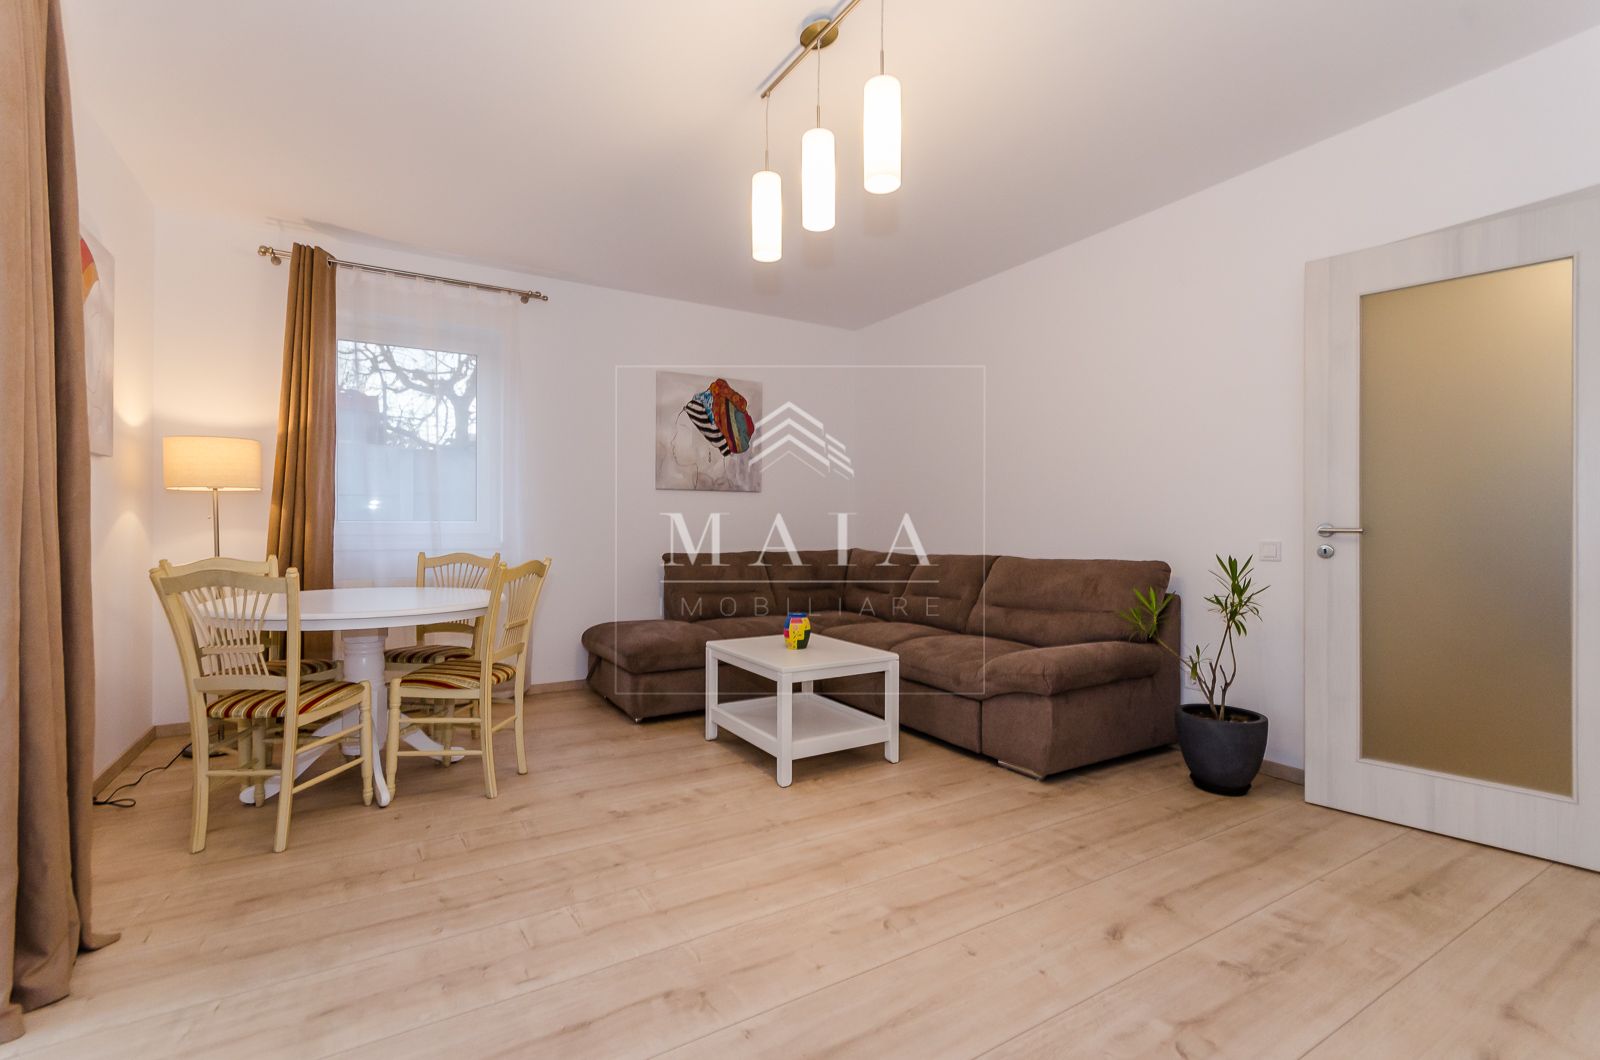 Apartament nou in zona Parcului Sub Arini,cu gradina de 90 mp si parcare